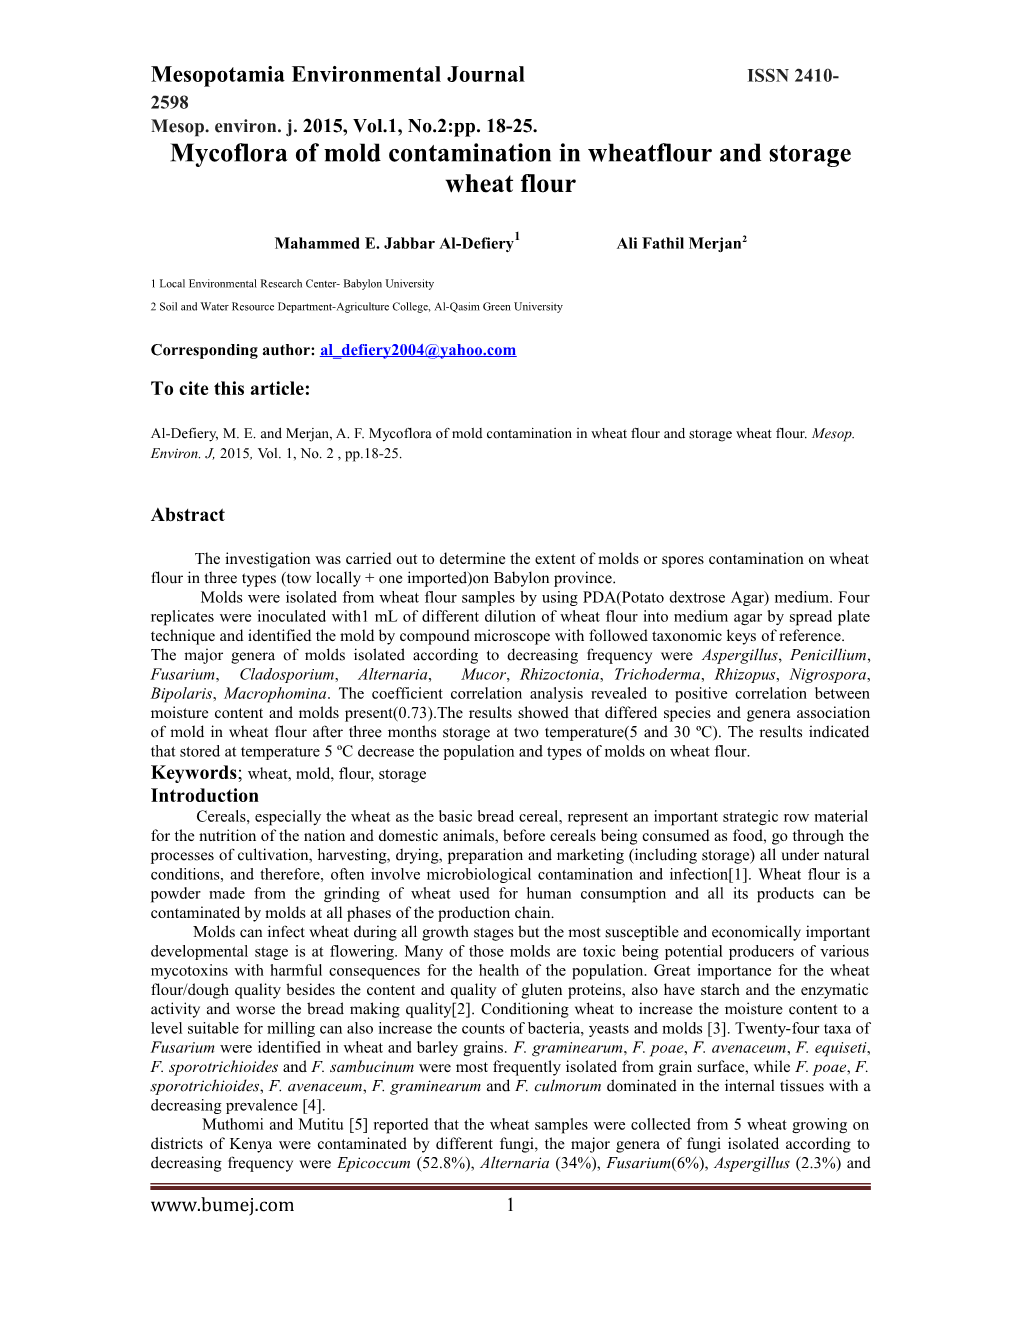 Mycoflora of Mold Contamination in Wheatflour and Storage Wheat Flour